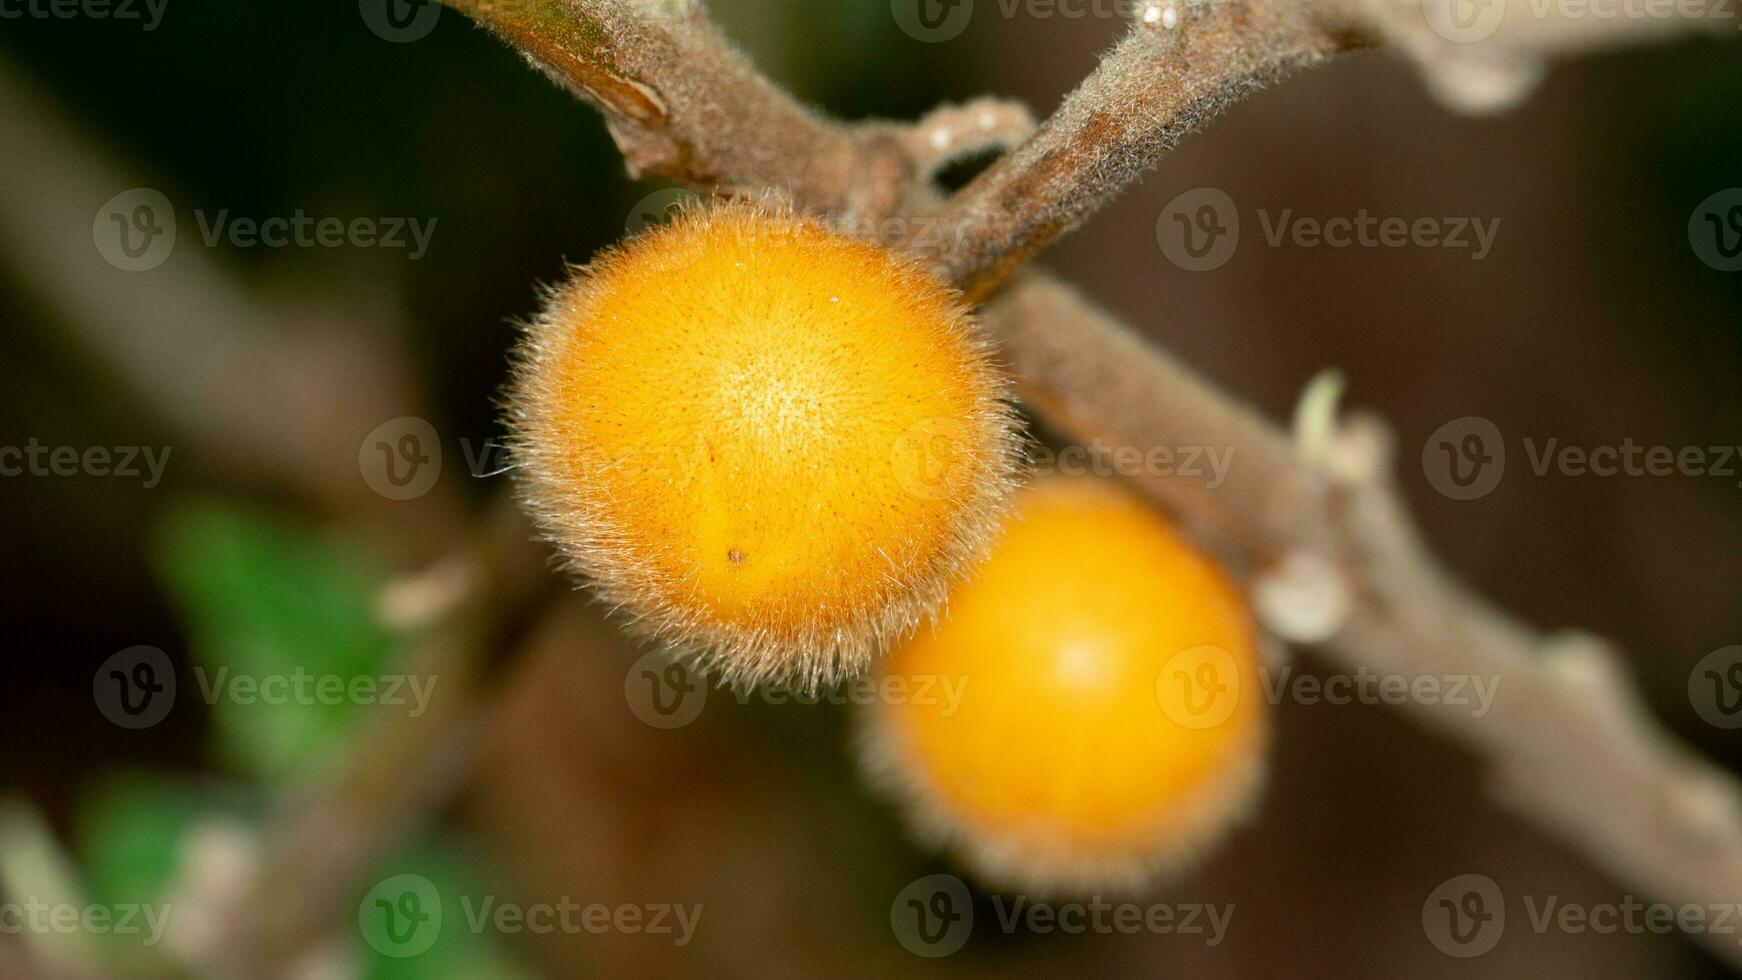 gul frukt av solanum ferox eller solanum stramonifolium och namn av hårig frukter äggplanta. frukt hängande på grenar. frukt är sfärisk och har mjuk hårstrån beläggning de hel område. foto